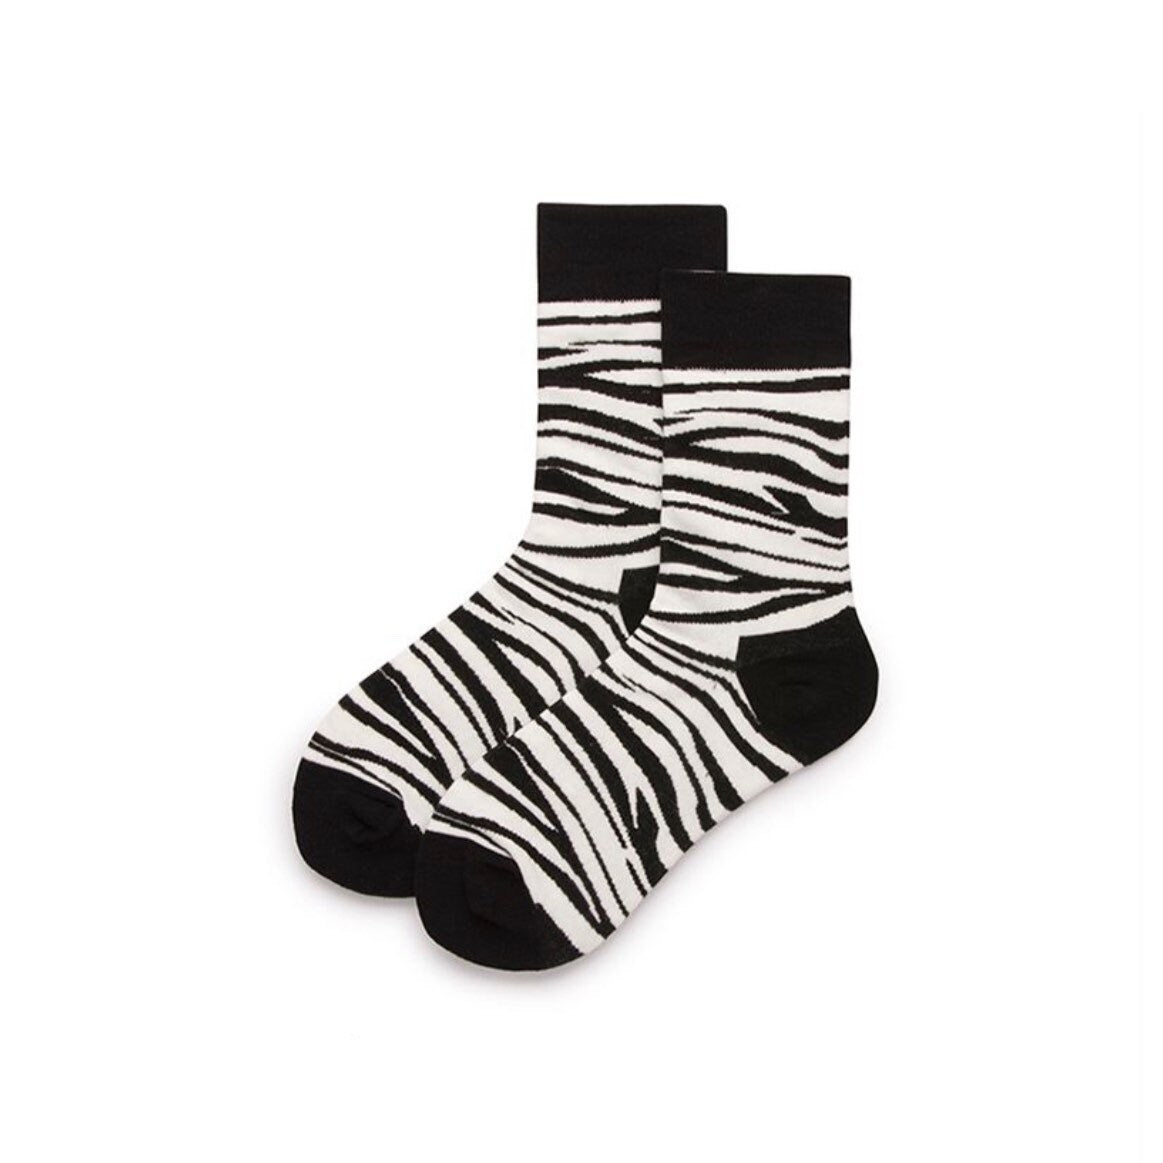 Miss June’s, Women’s Cotton socks ,Cool socks, colorful socks, striped socks,patterned socks, design socks,unisex socks